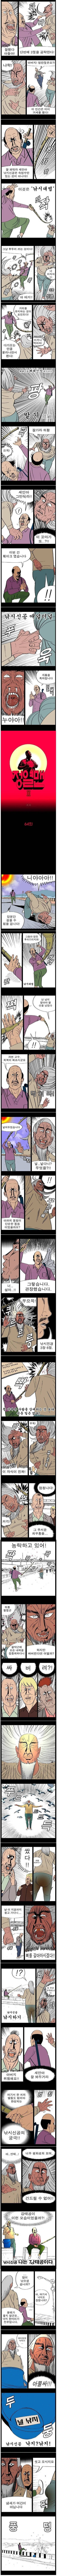 대한민국 웹툰 역대 최고의 격투씬